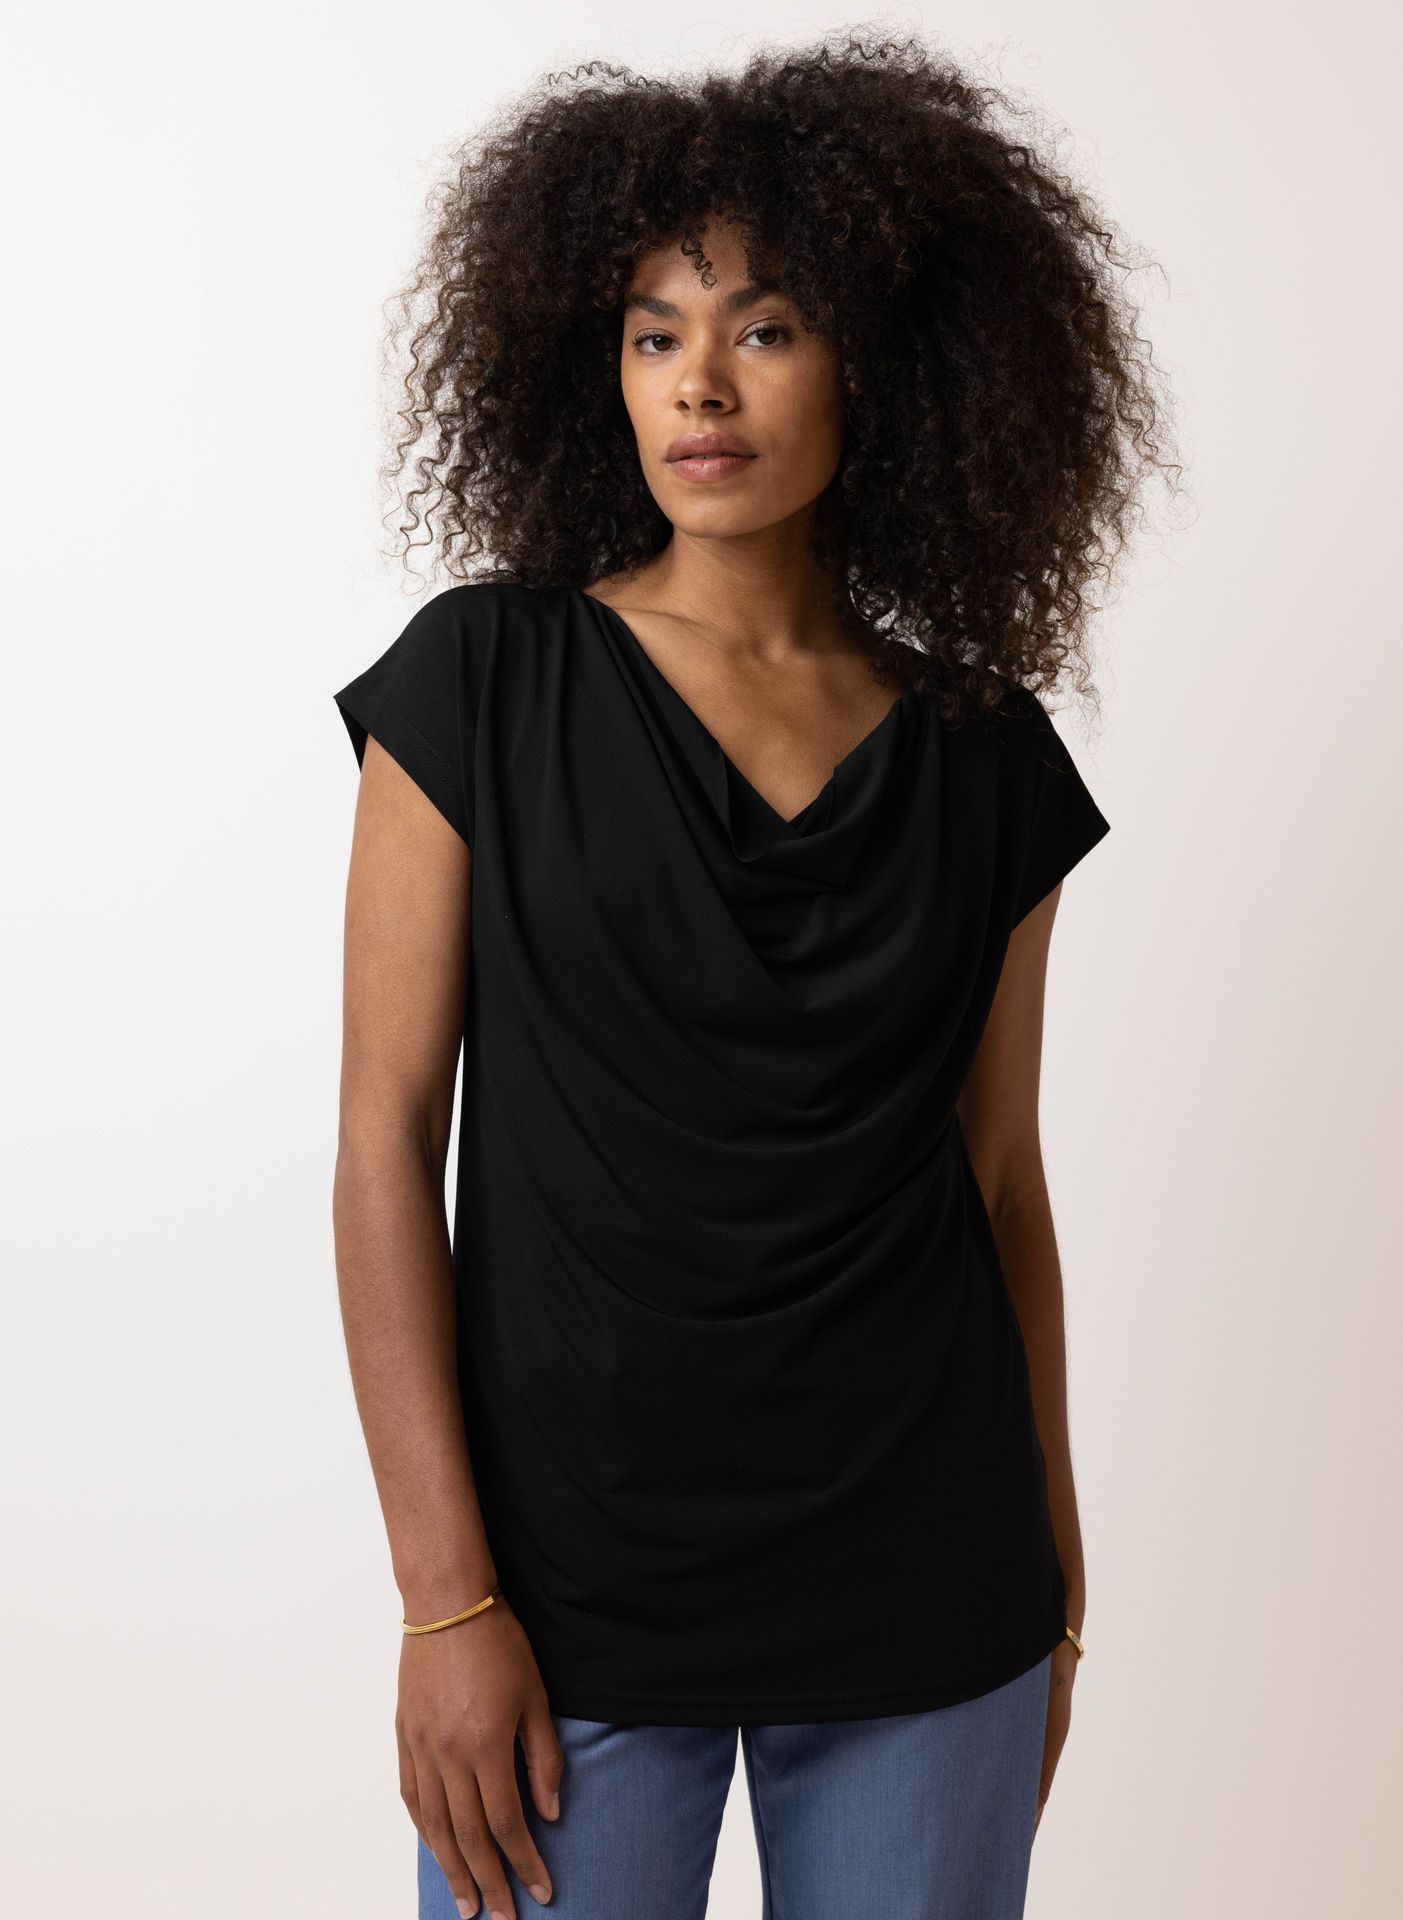 Norah Zwart shirt met gedrapeerde hals black 209994-001